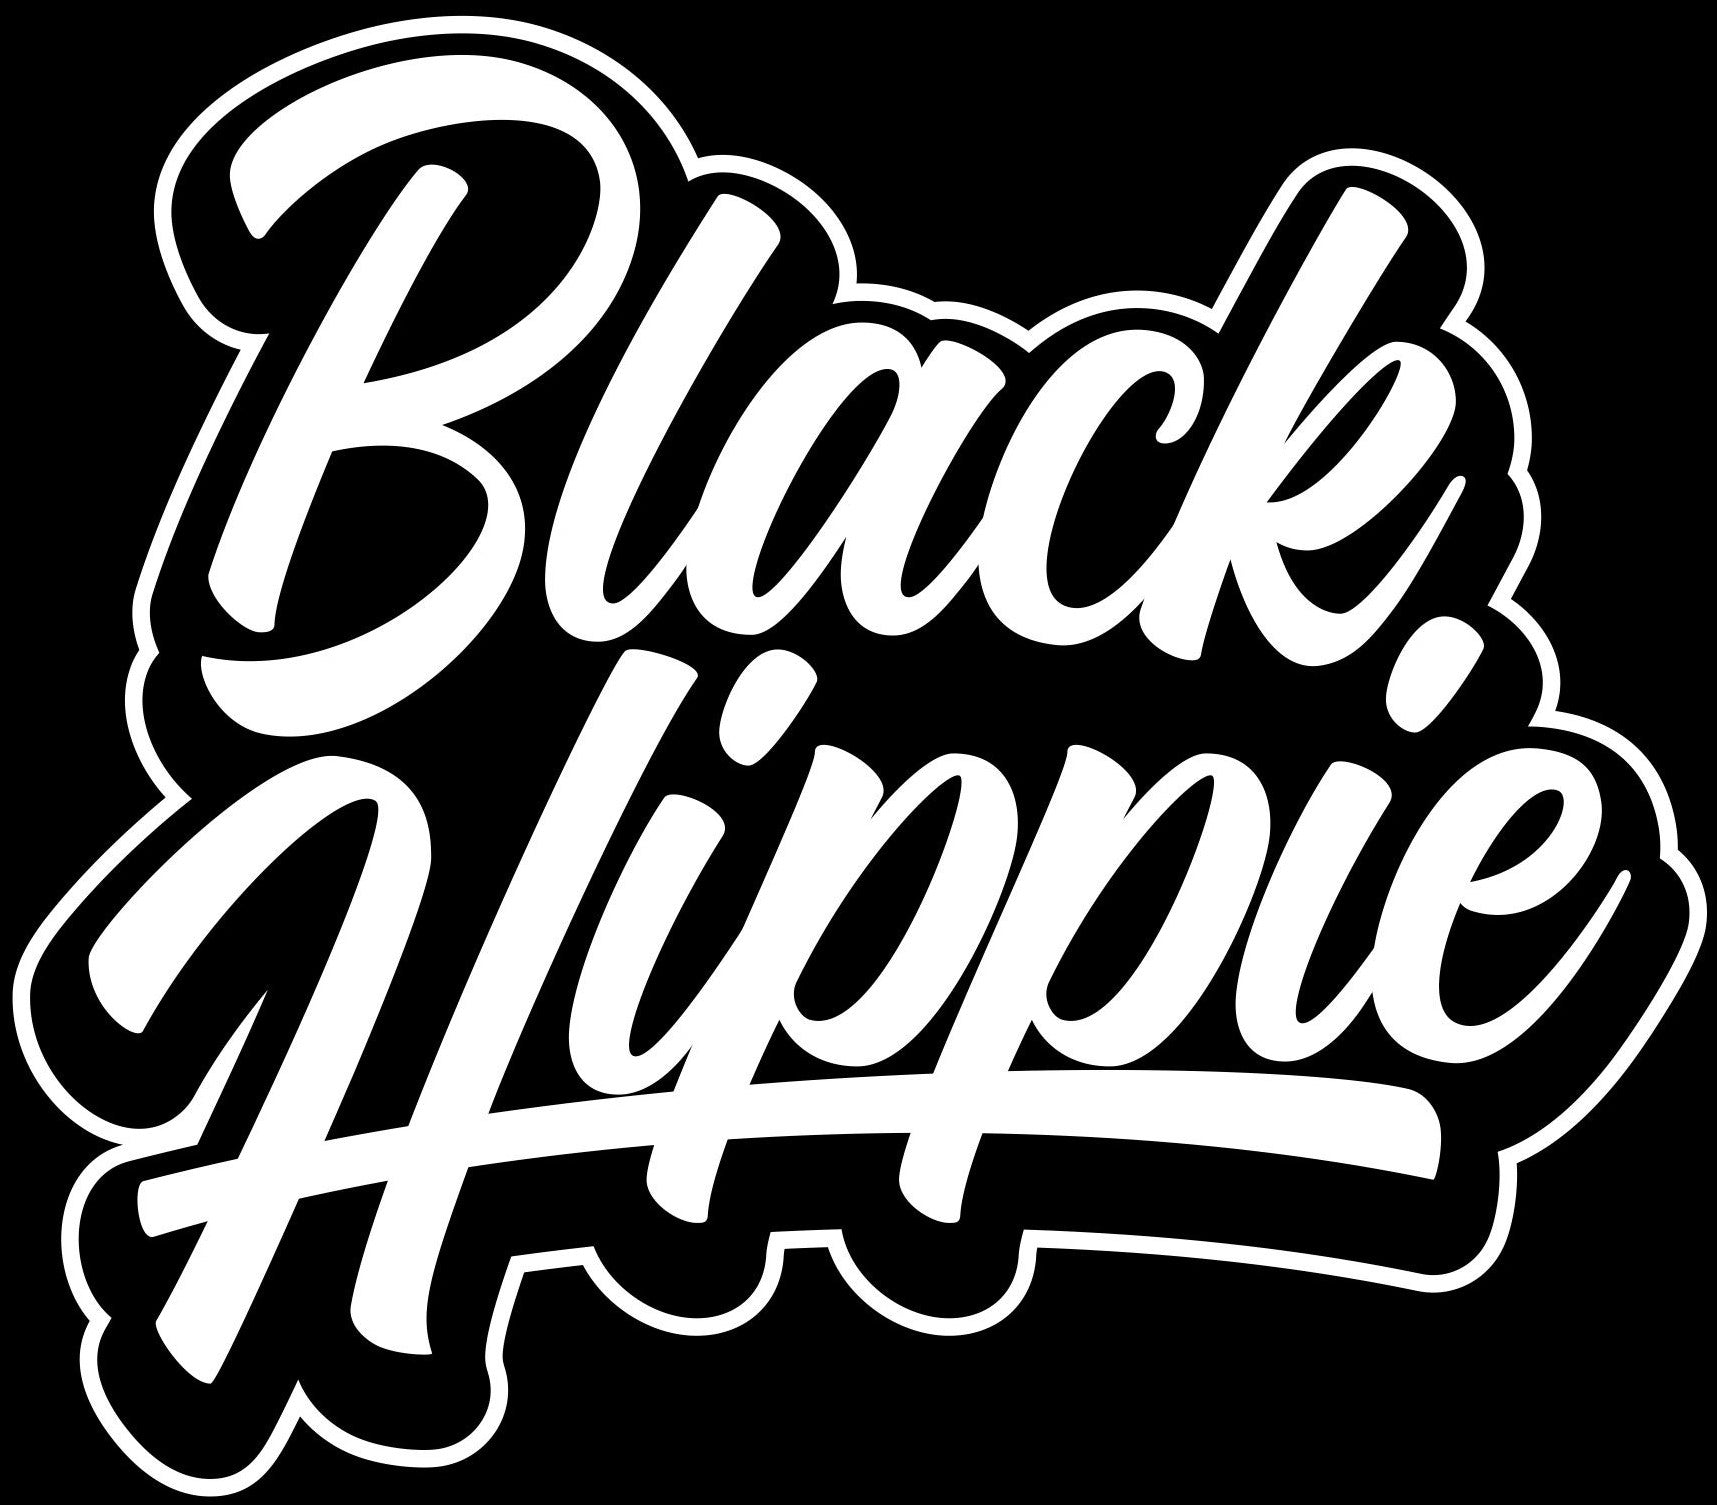 Black Hippie 